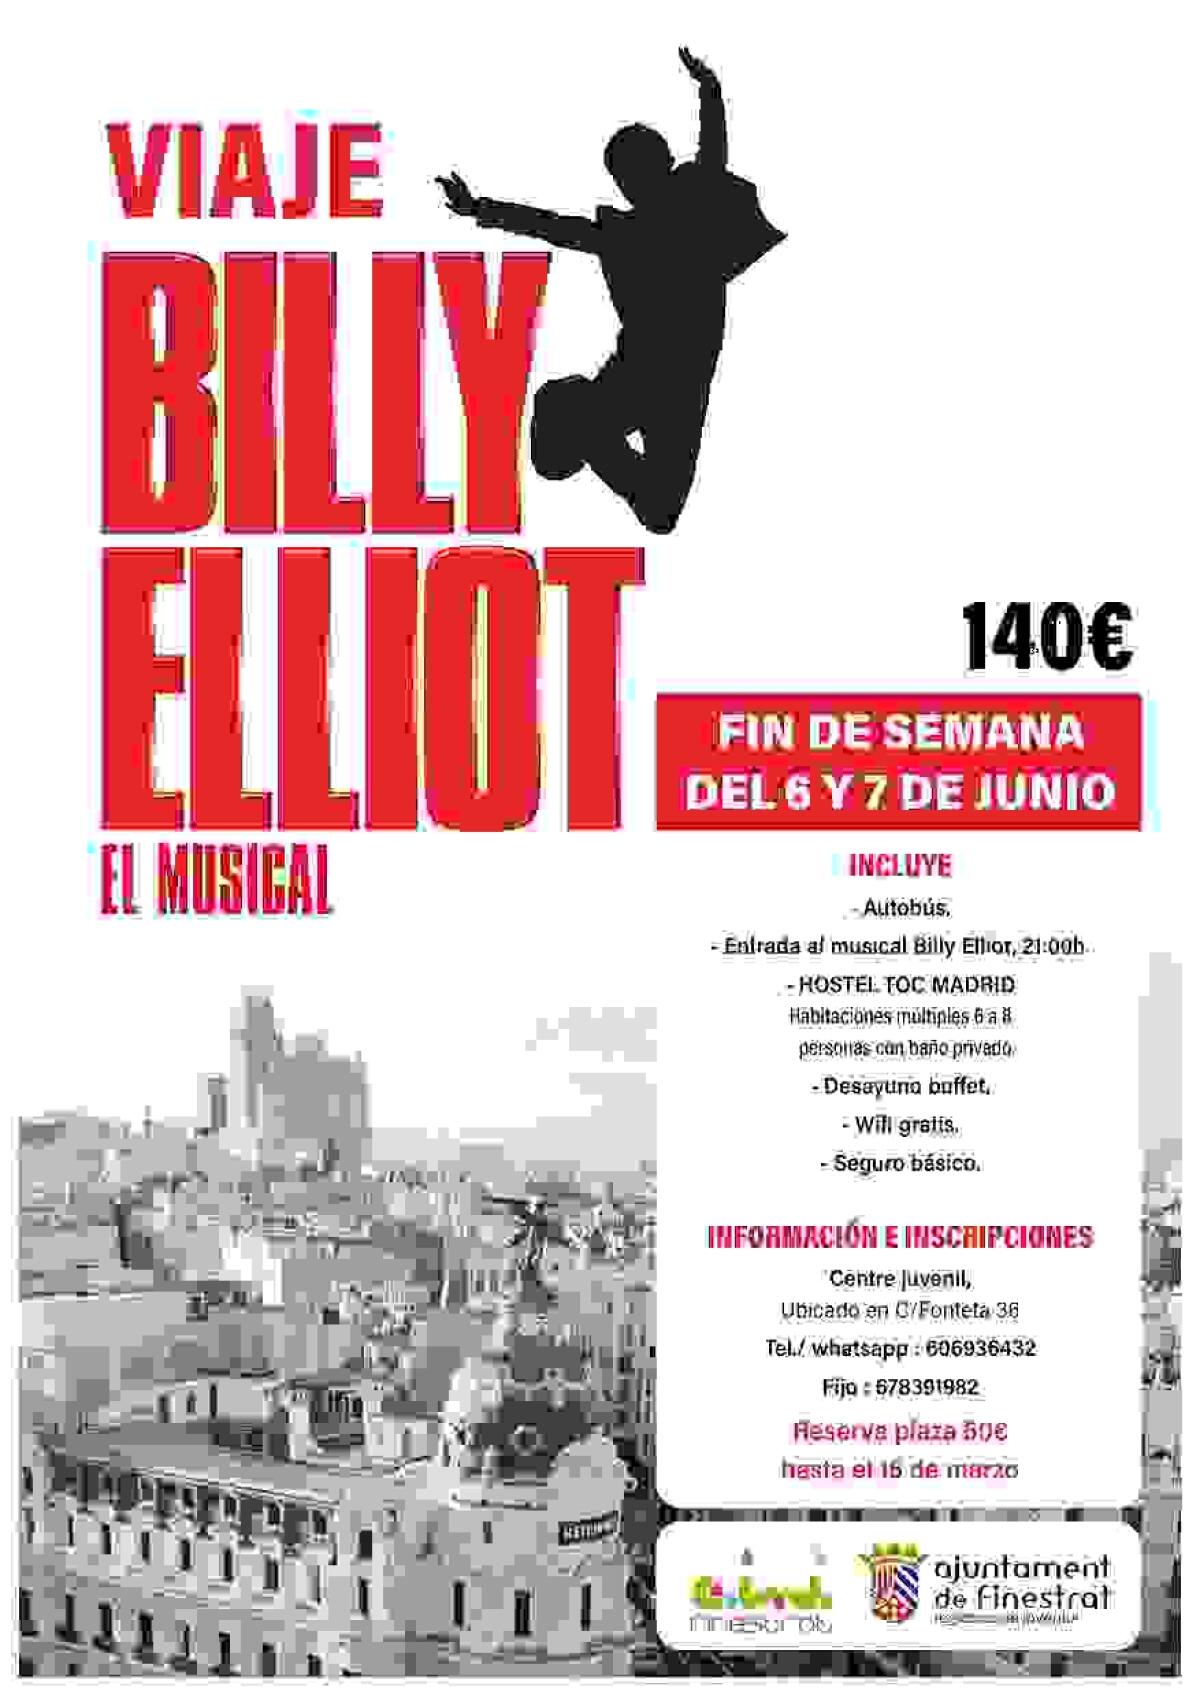 La concejalía de Juventud de Finestrat organiza una visita a Madrid para ver el musical “Billy Elliot”